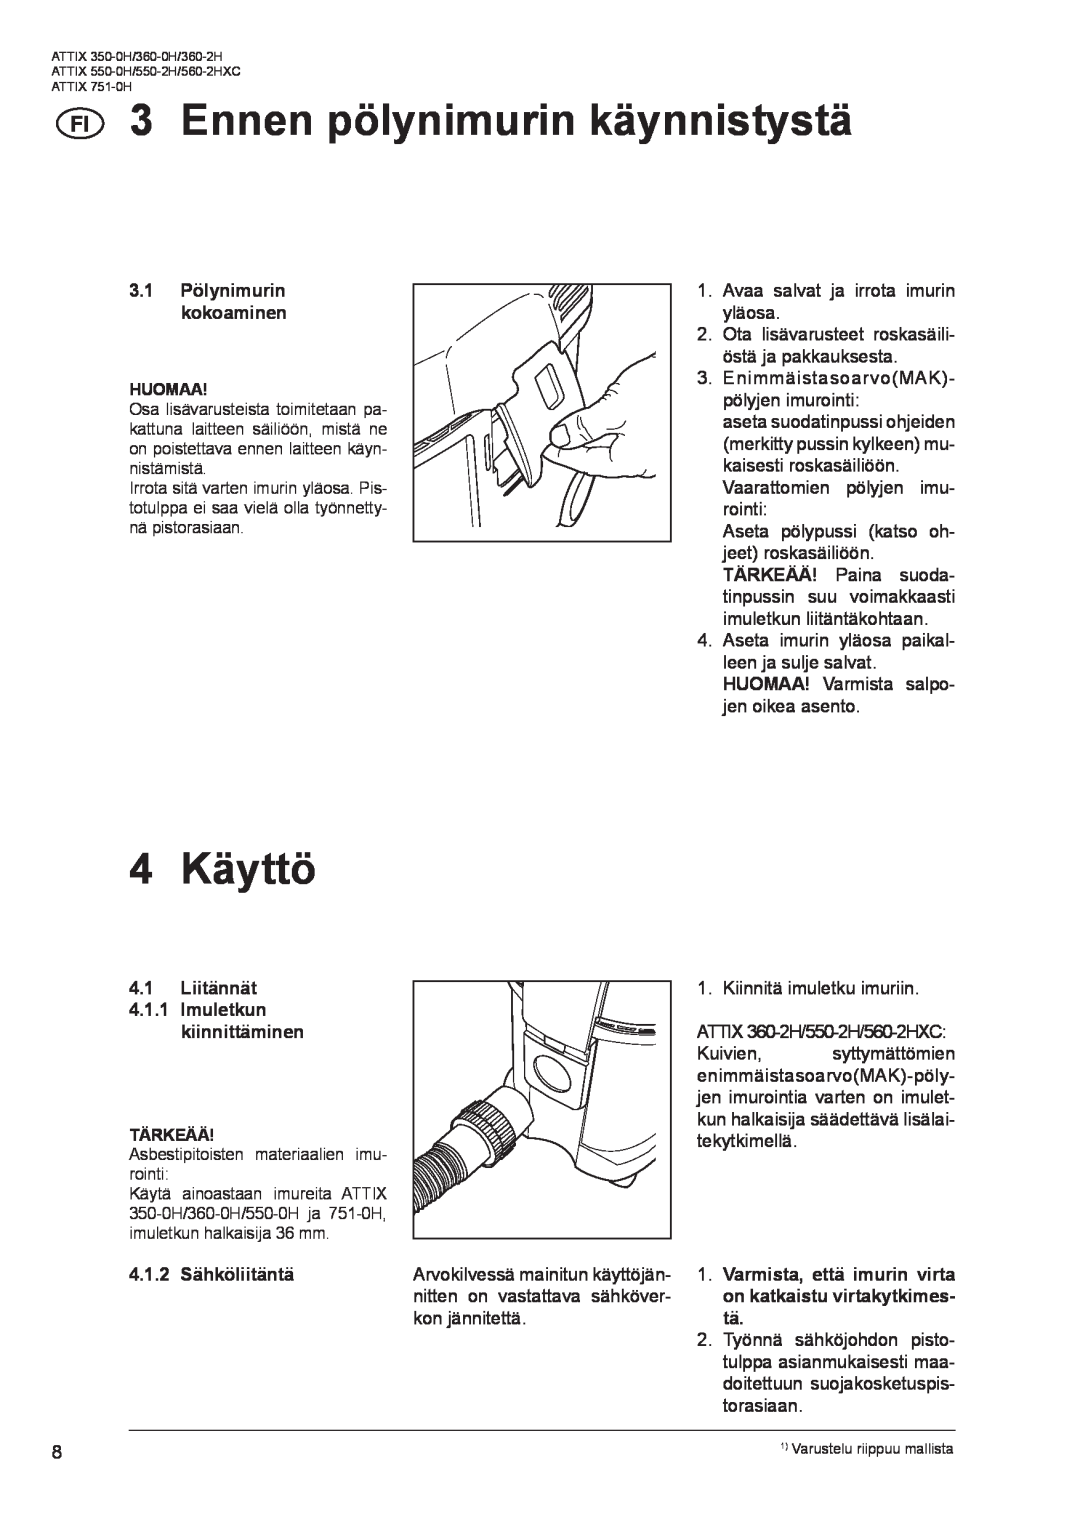 Nilfisk-ALTO ATTIX 751-0H manual Ennen pölynimurin käynnistystä, 4 Käyttö, 3.1Pölynimurin kokoaminen HUOMAA, Tärkeää 